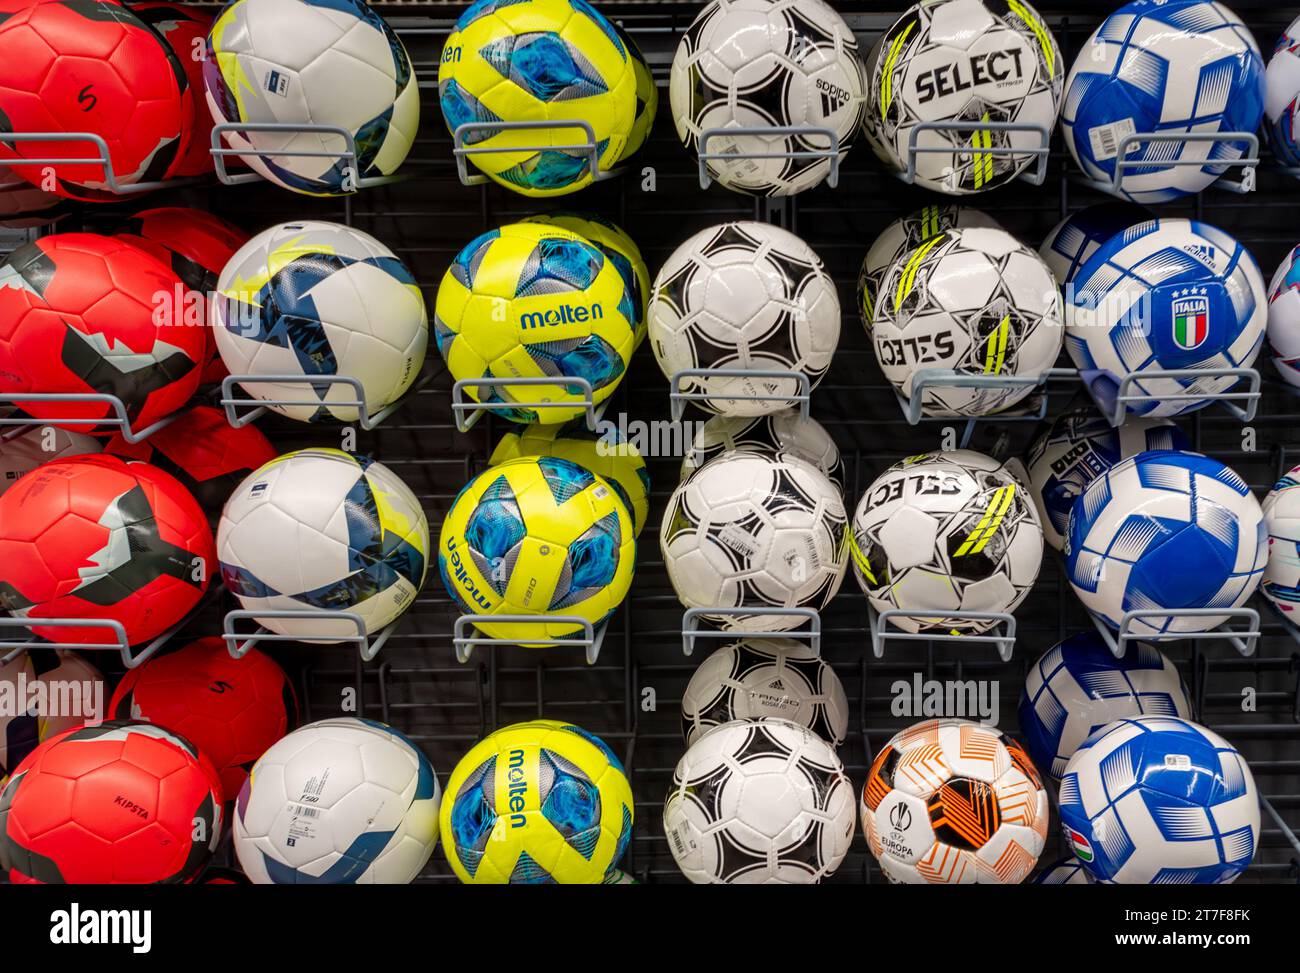 Italie - 15 novembre 2023 : ballons de football de différentes couleurs et marques affichés sur les étagères à vendre dans le magasin de vêtements et d'articles de sport Decathlon, déc Banque D'Images